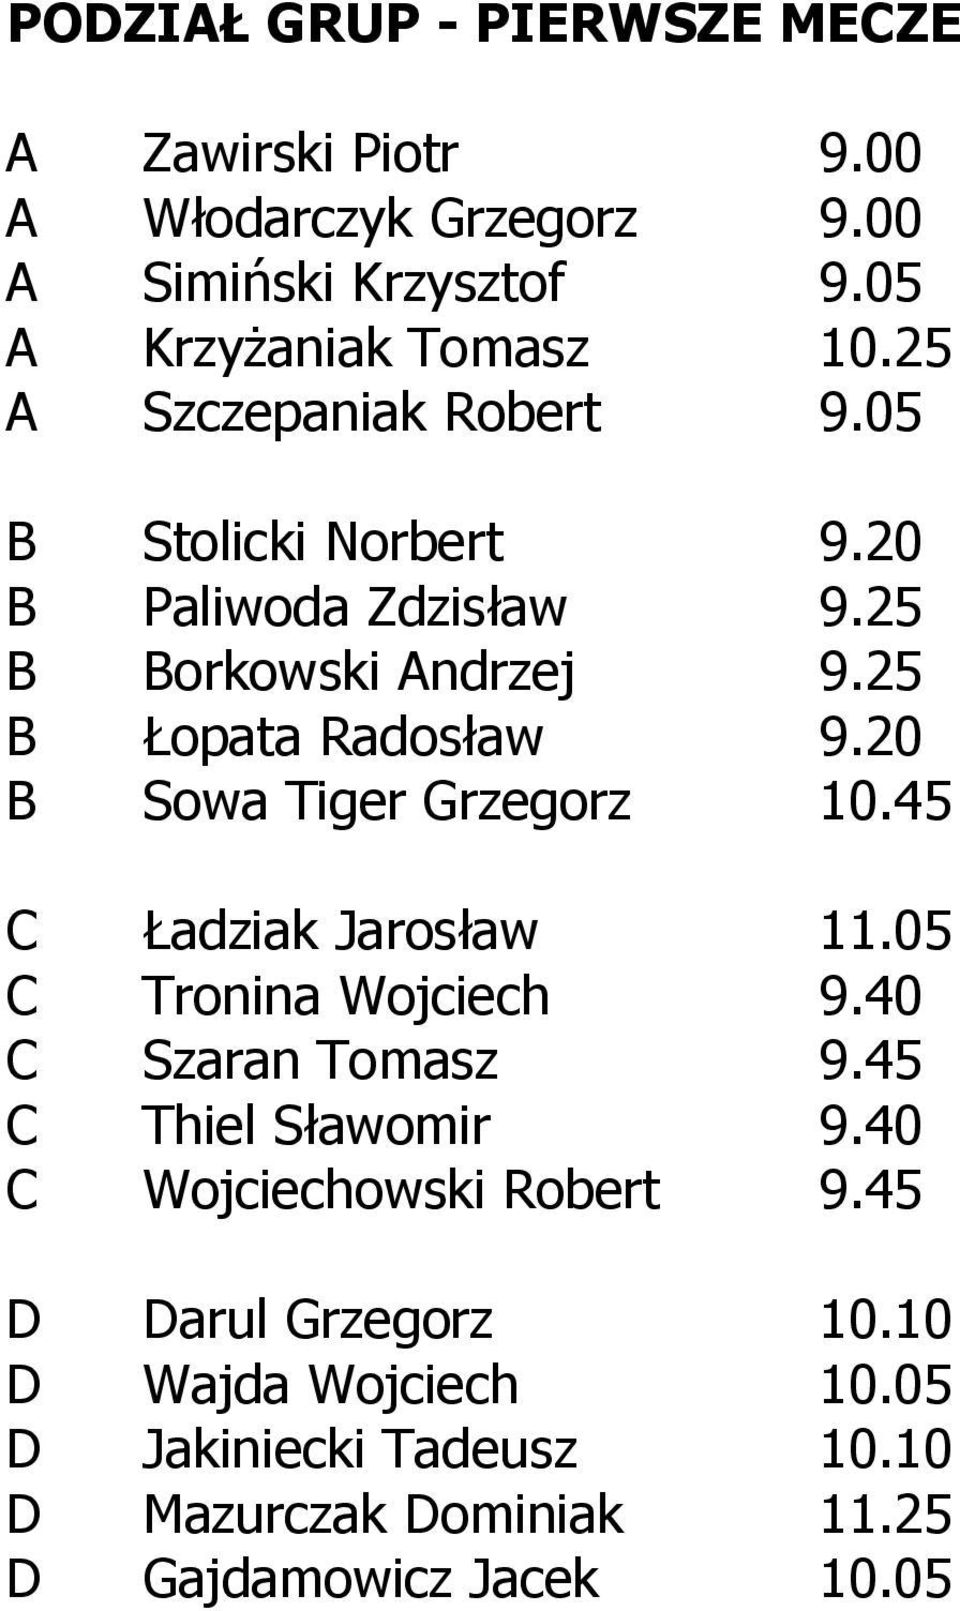 20 B Sowa Tiger Grzegorz 10.45 C Ładziak Jarosław 11.05 C Tronina Wojciech 9.40 C Szaran Tomasz 9.45 C Thiel Sławomir 9.